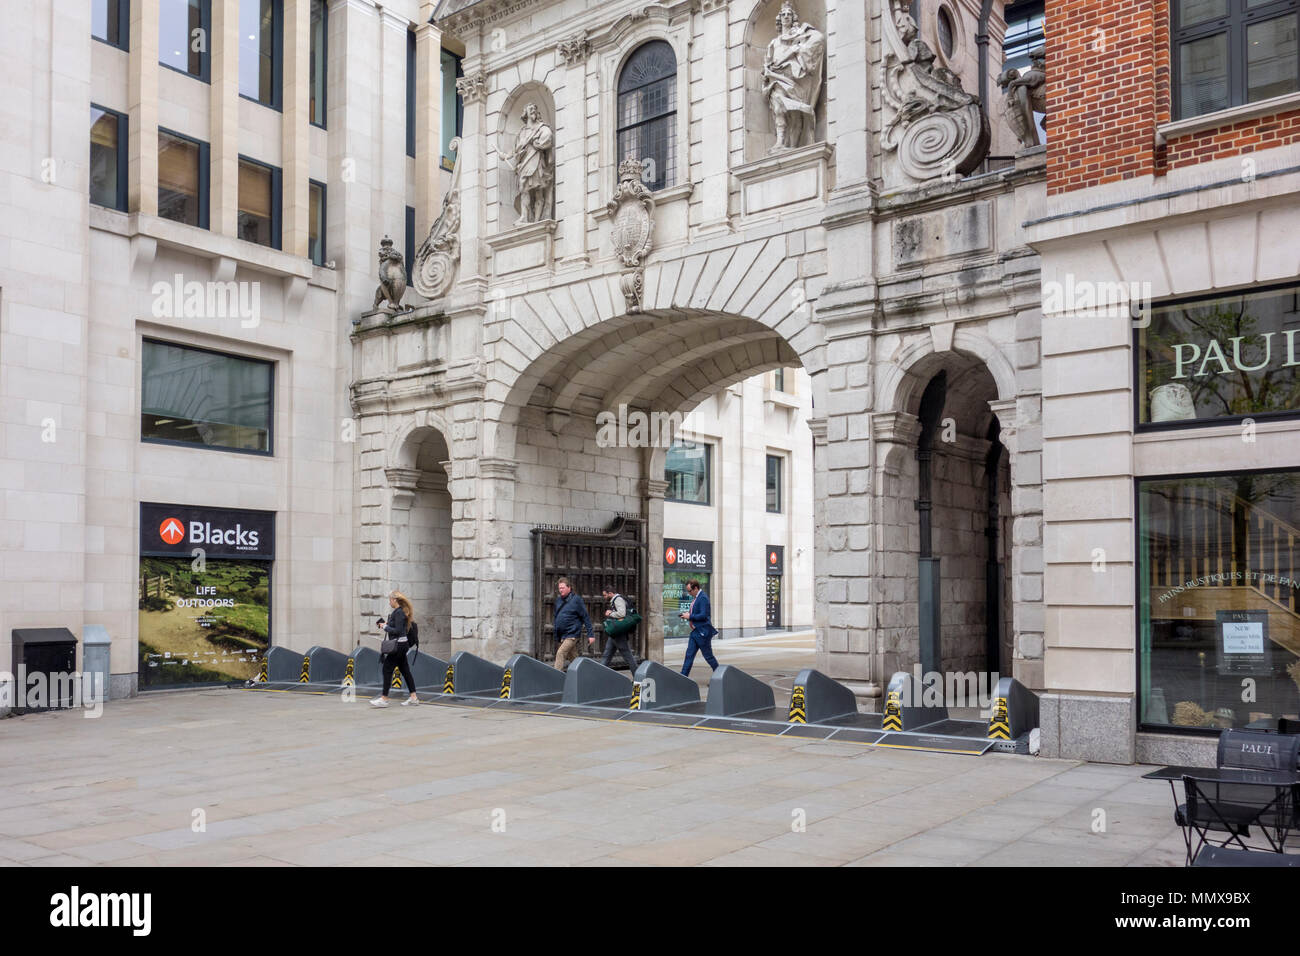 Barrières de sécurité anti-terroriste à Paternoster Square, City of London, UK Banque D'Images